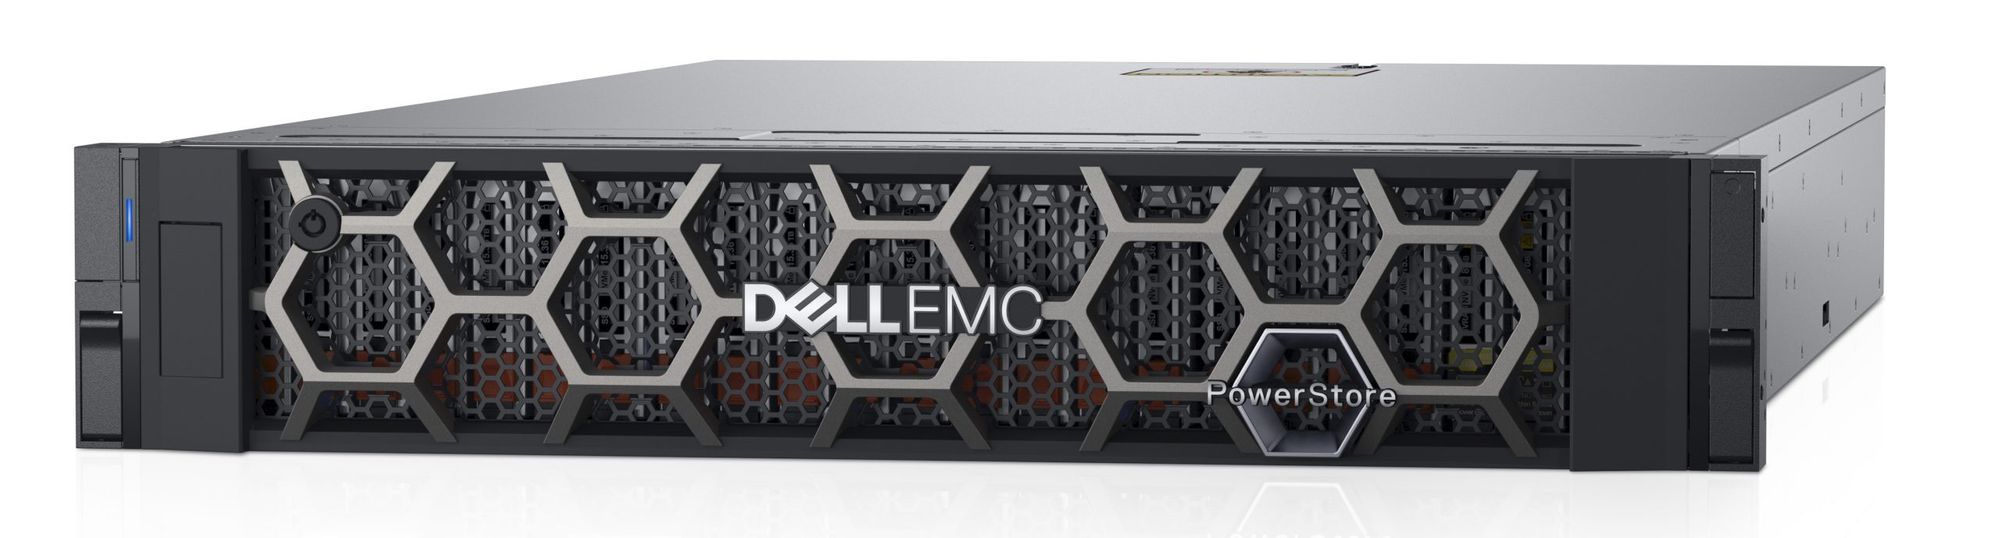 Dell EMC annonce une nouvelle baie de stockage : PowerStore